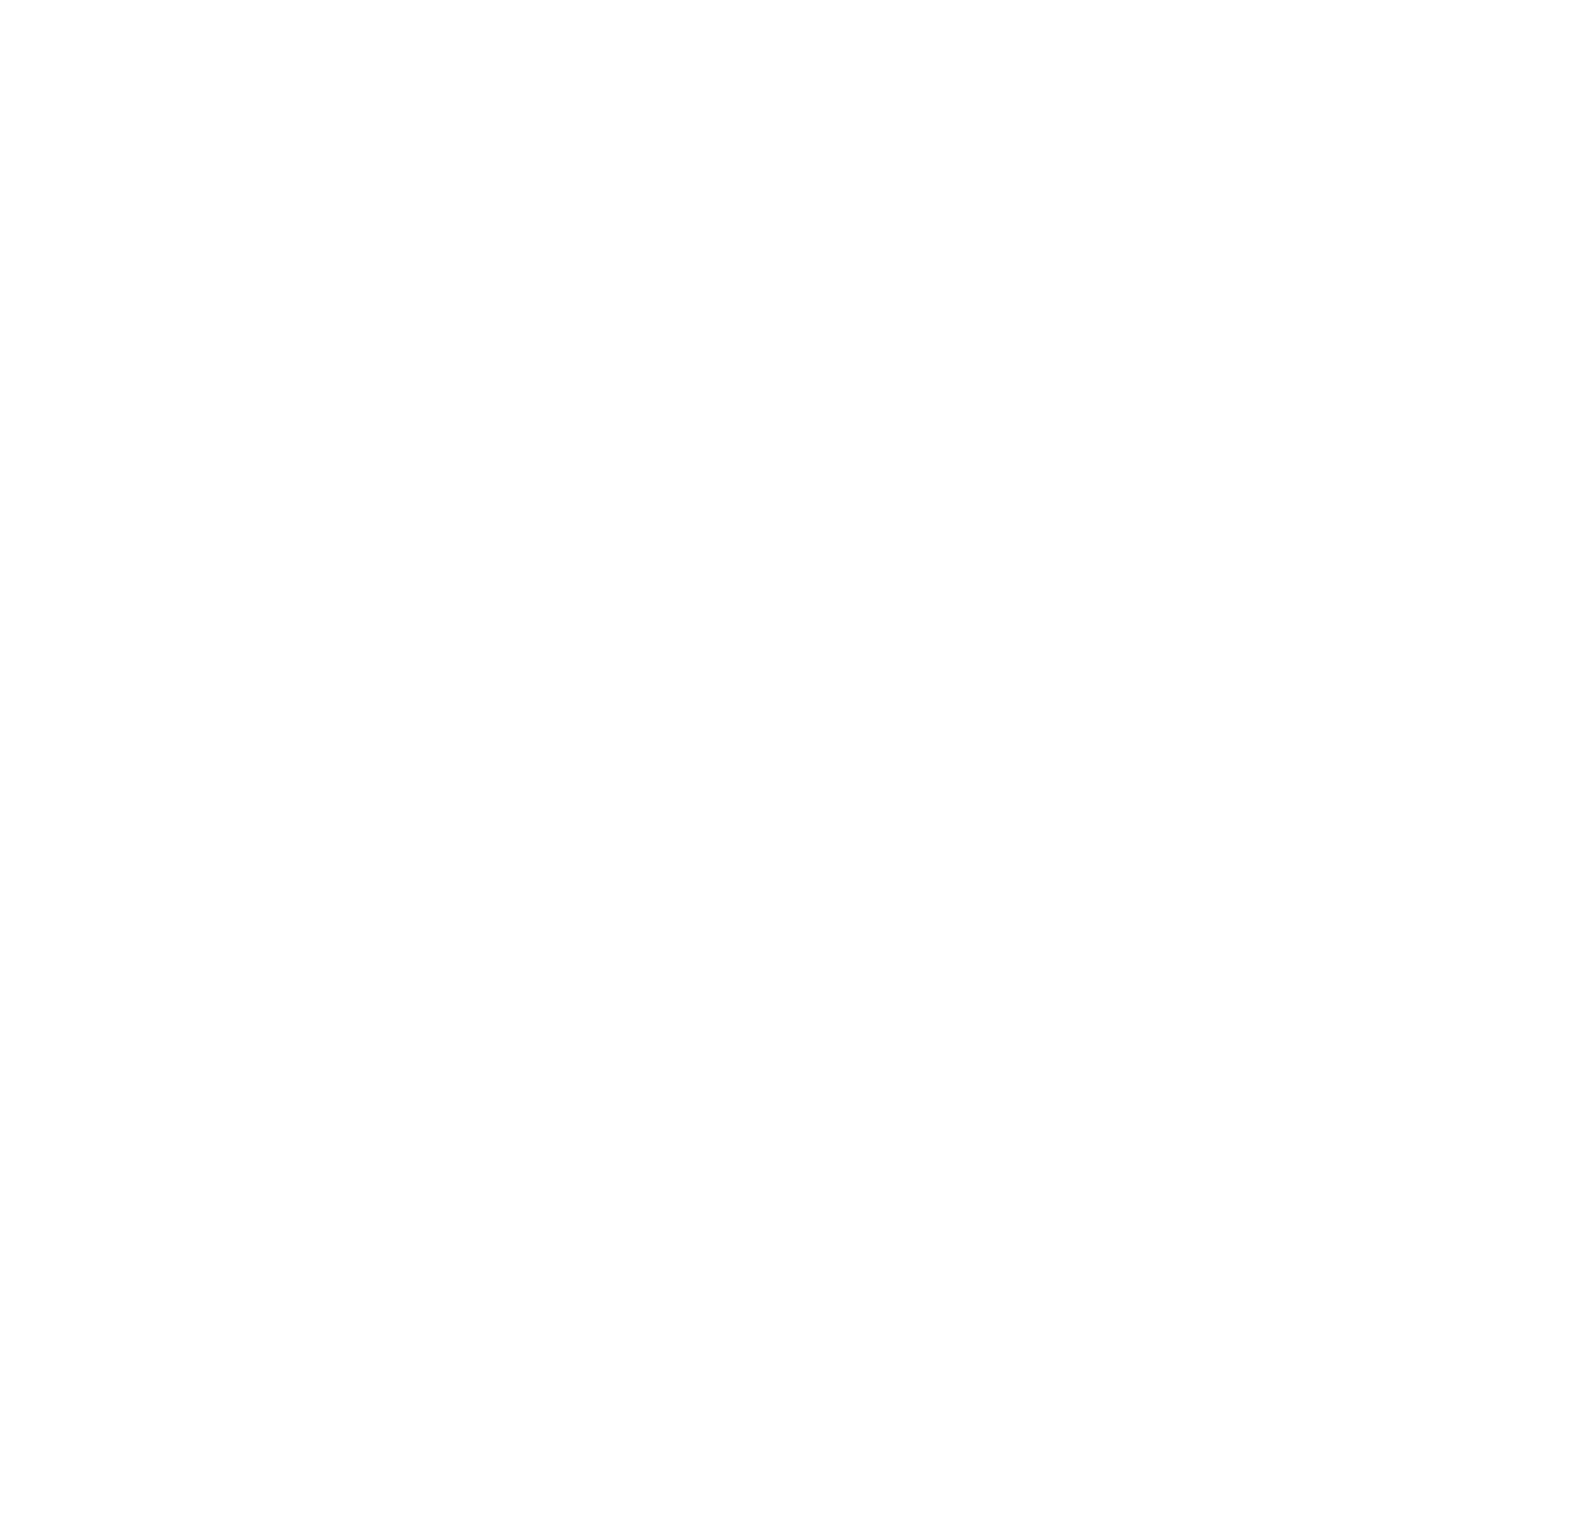 Pernod Ricard logo for dark backgrounds (transparent PNG)